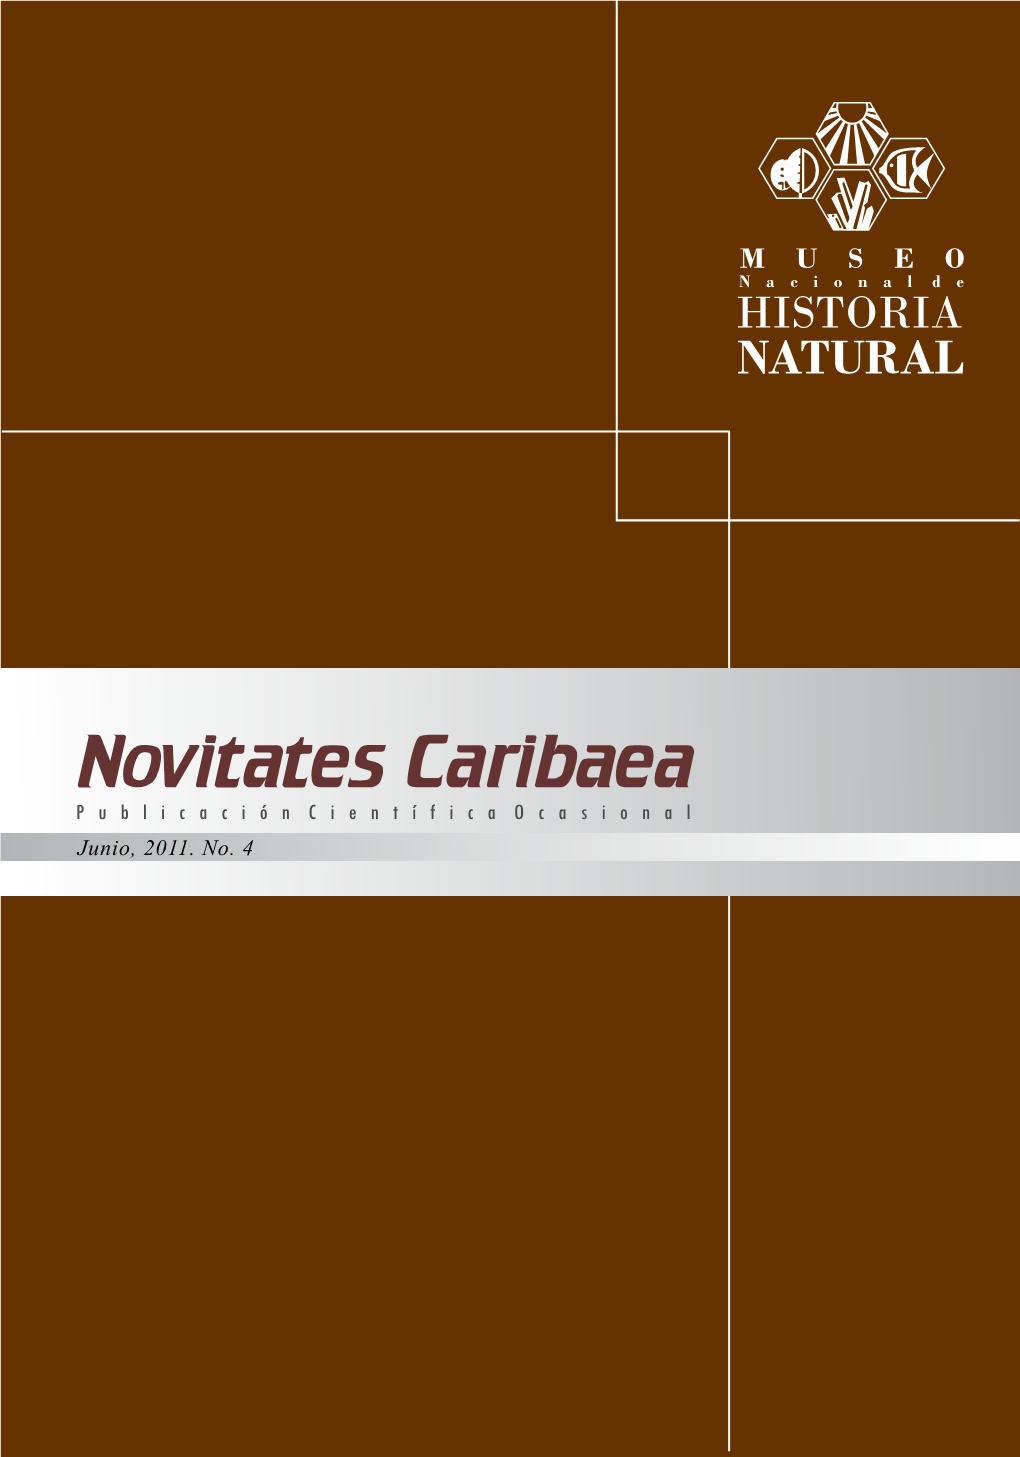 Junio, 2011. No. 4 Editores Celeste Mir Museo Nacional De Historia Natural (MNHNSD)